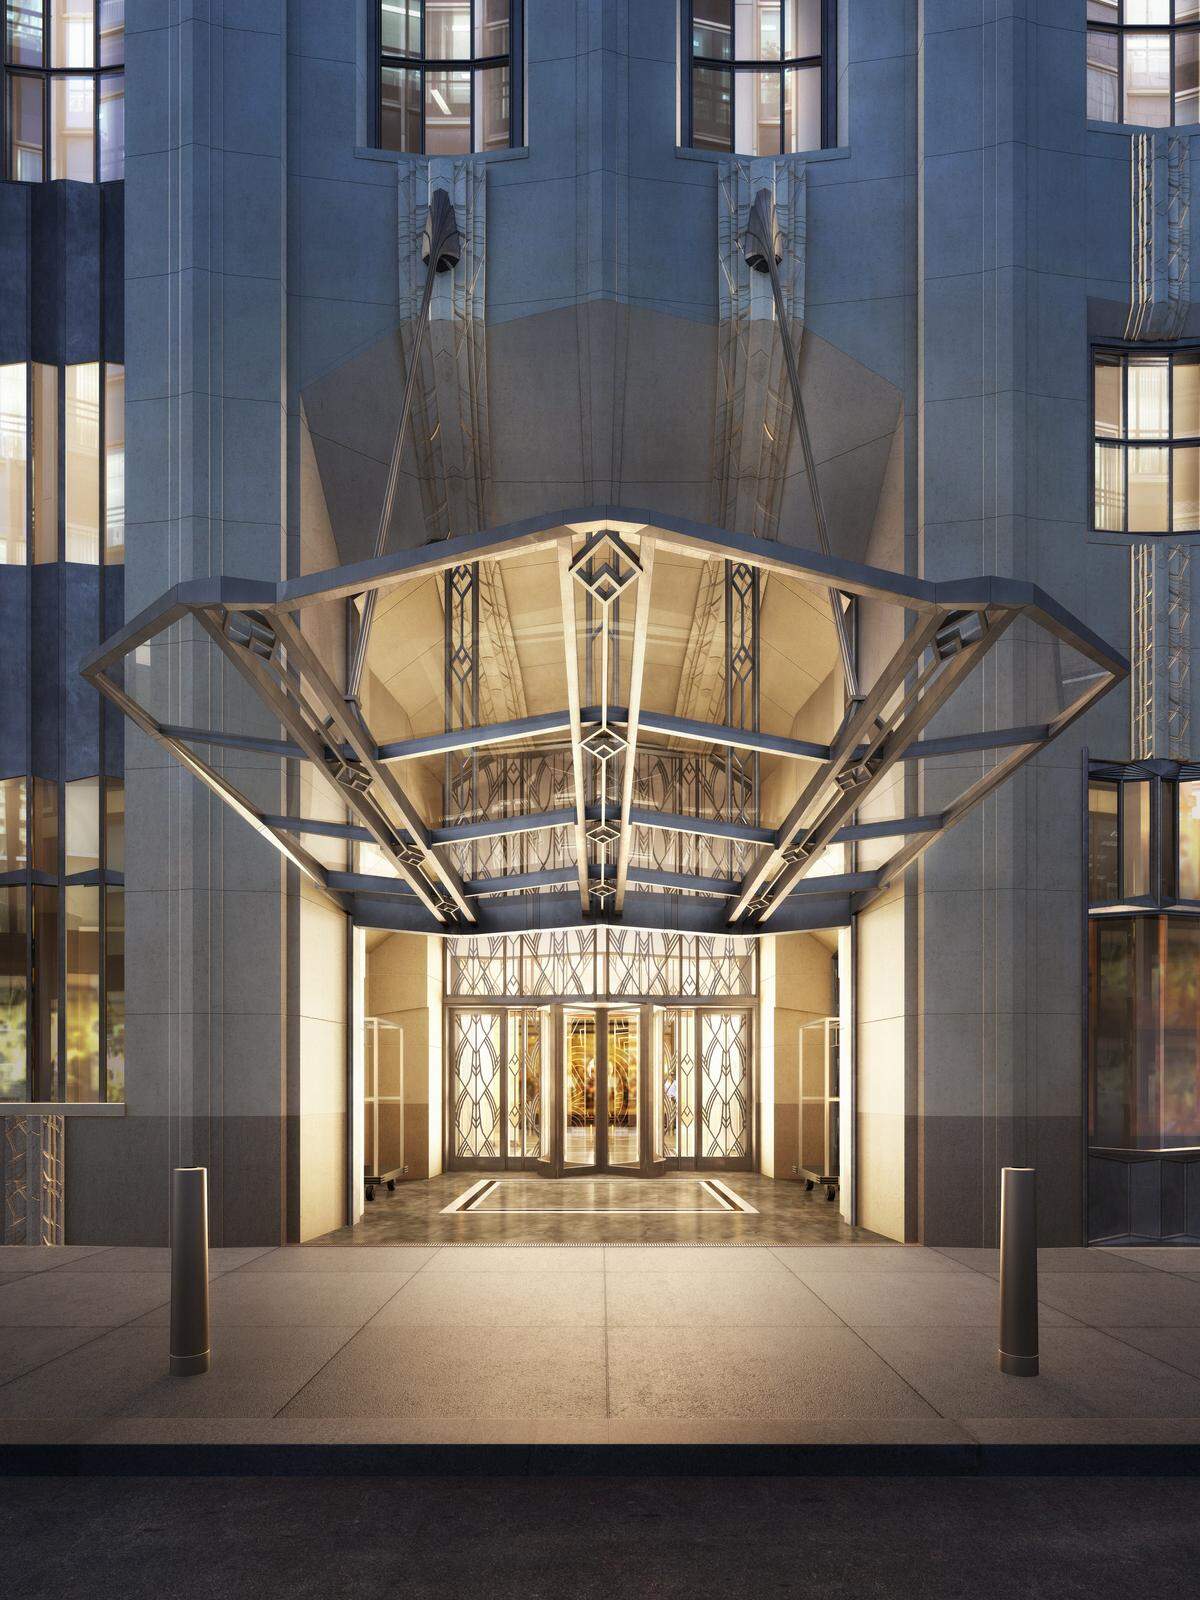 Seit der Eröffnung 1931 diente das von Ralph T. Walker geplante Art-déco-Hochhaus Ecke Broadway/Wall Street stets Banken als repräsentative Adresse: Irving Trust, Bank of New York, BNY Melon.